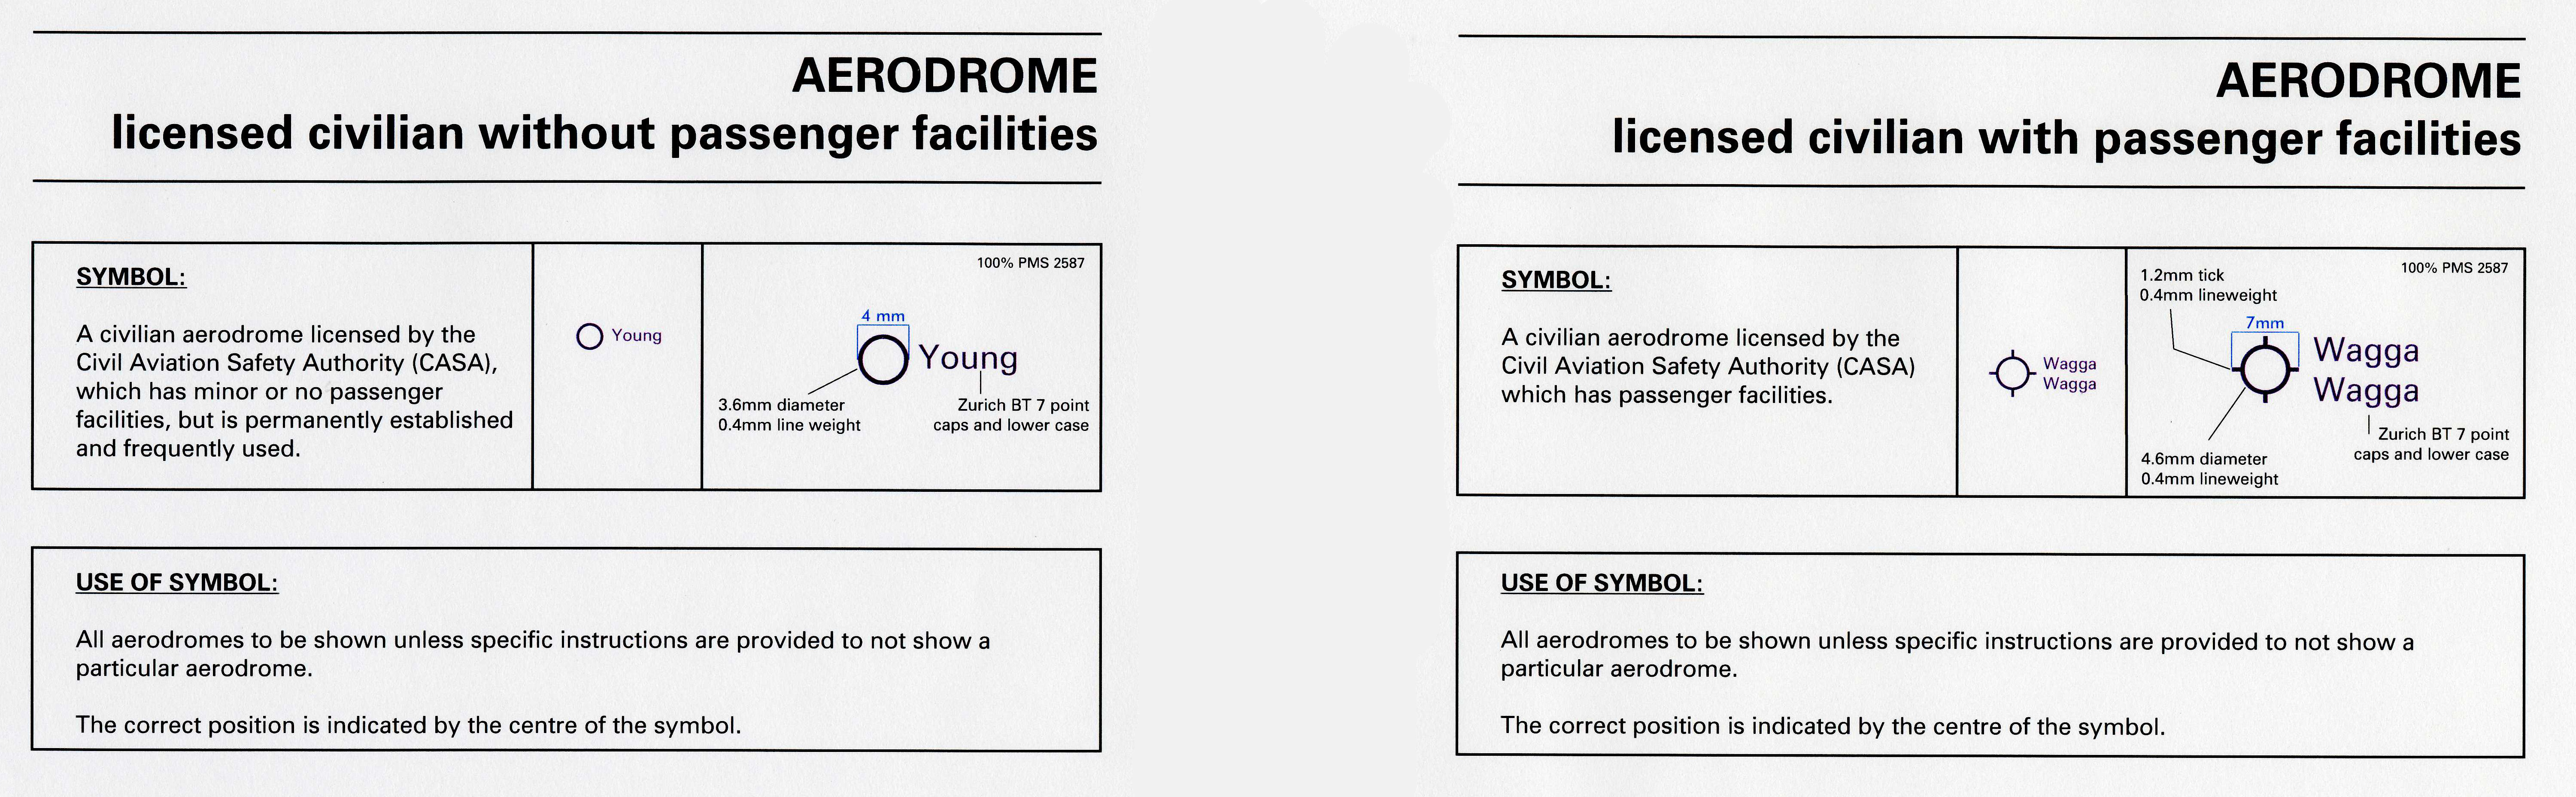 Aerodrome symbology excerpts